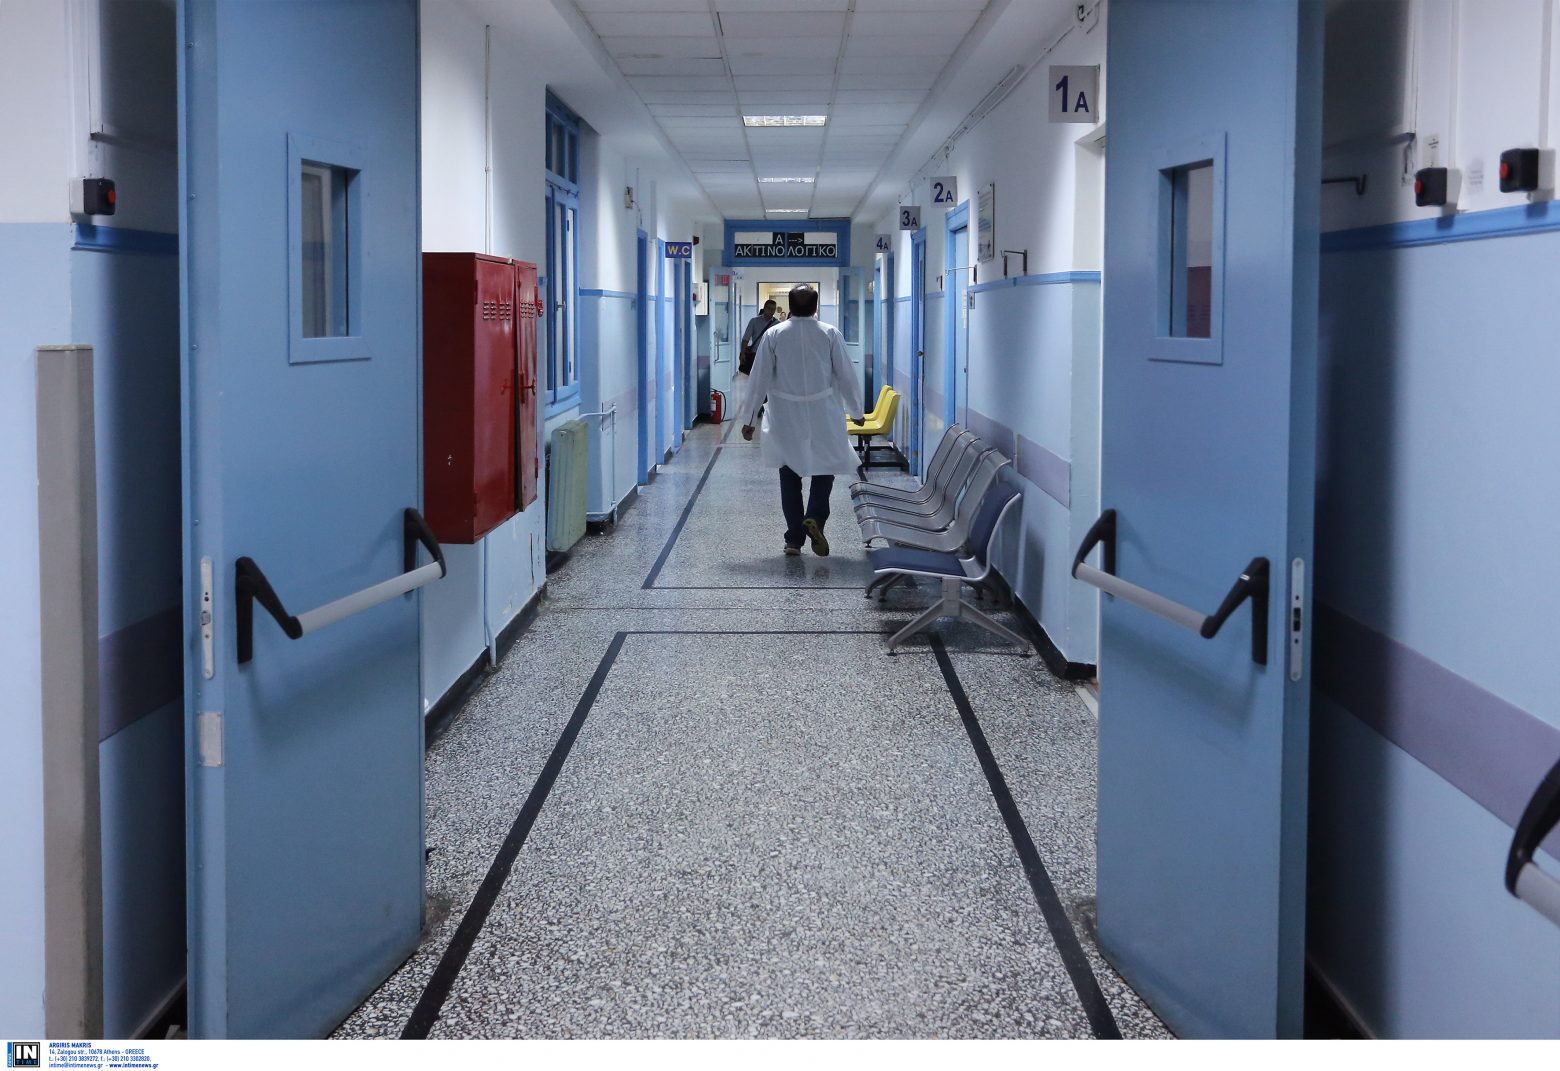 Θεσσαλονίκη - Στο Ιπποκράτειο η 14χρονη από τη Δράμα που μεταφέρθηκε στο νοσοκομείο με εισαγγελική παρέμβαση